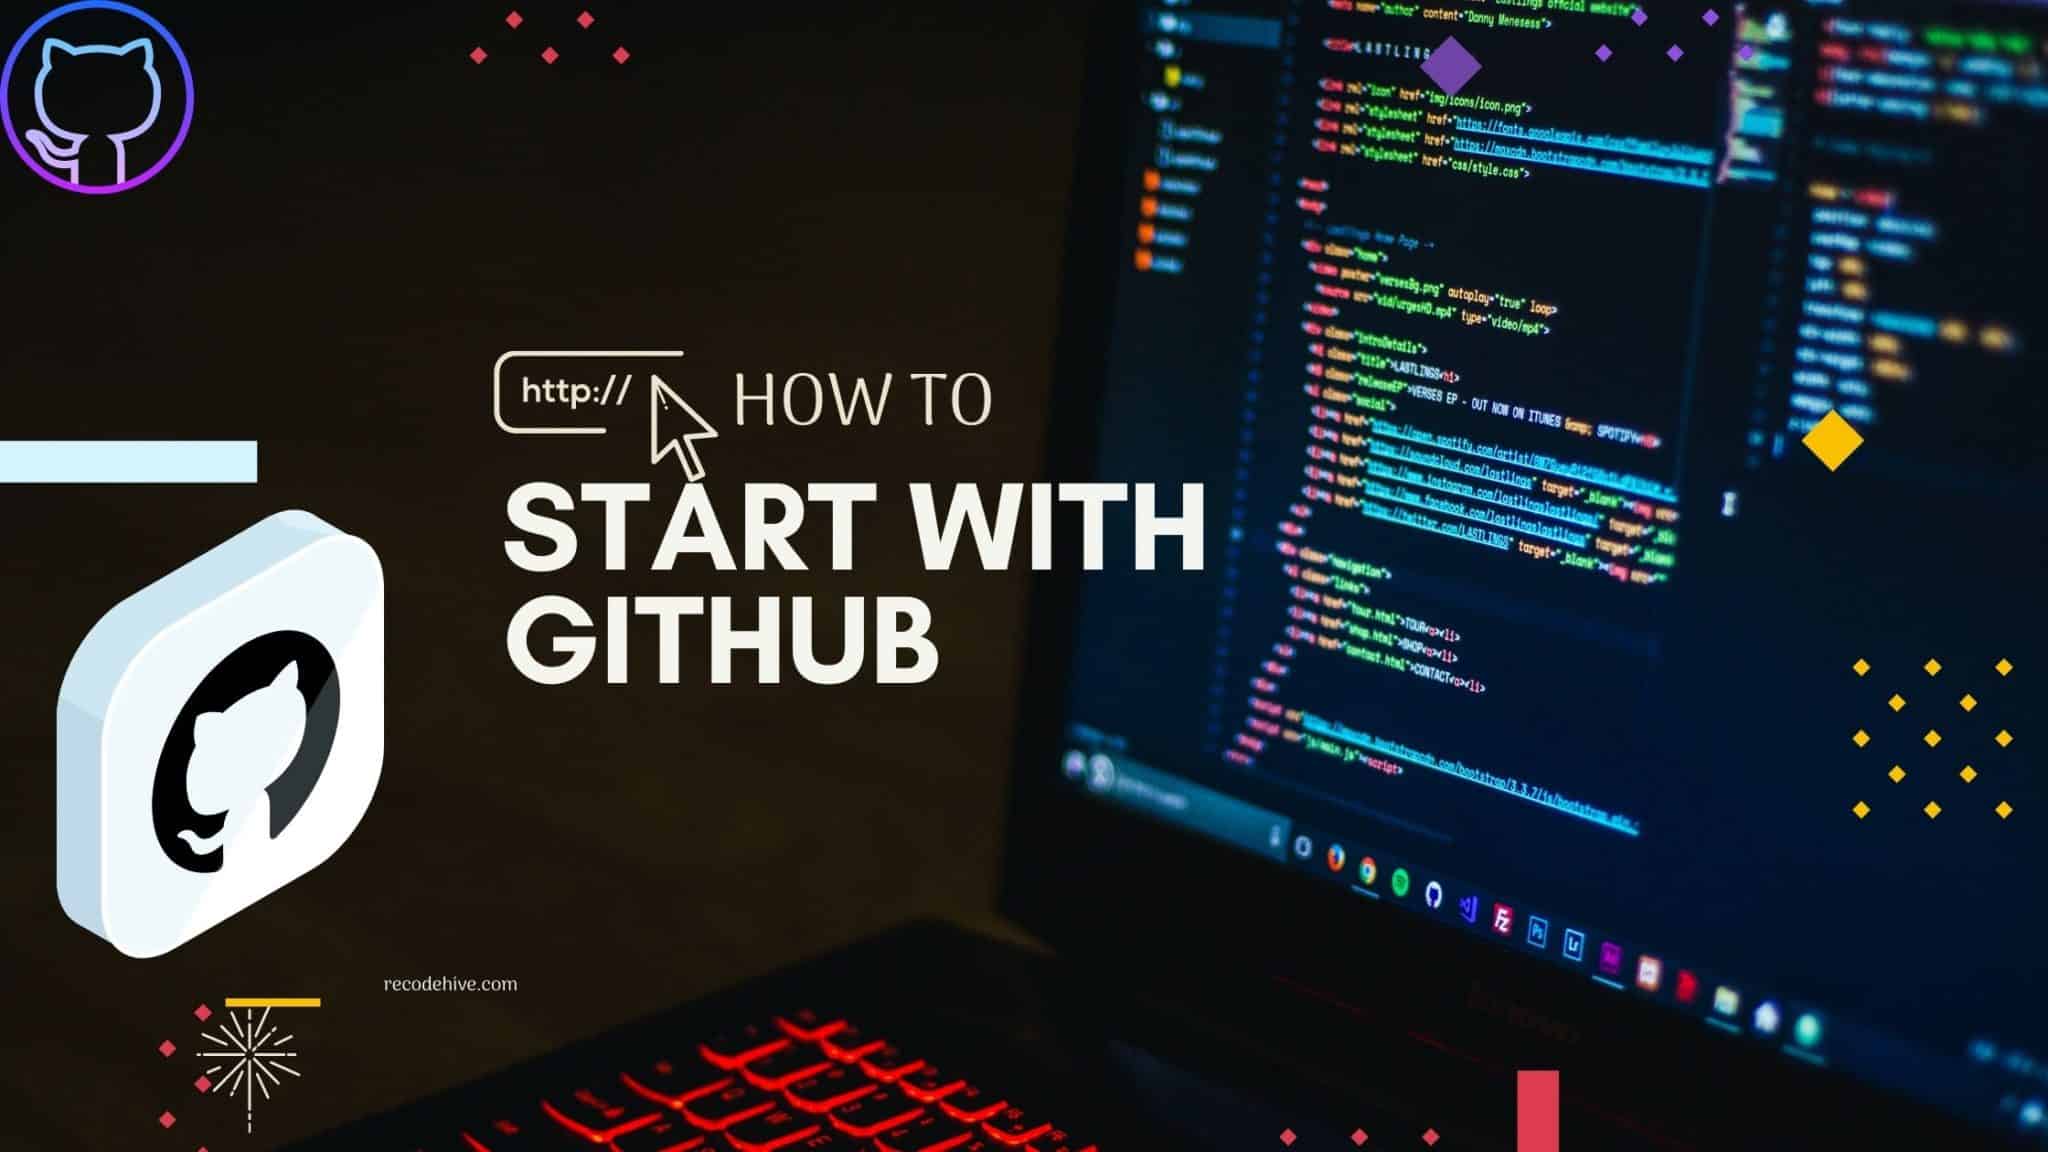 Start with Github